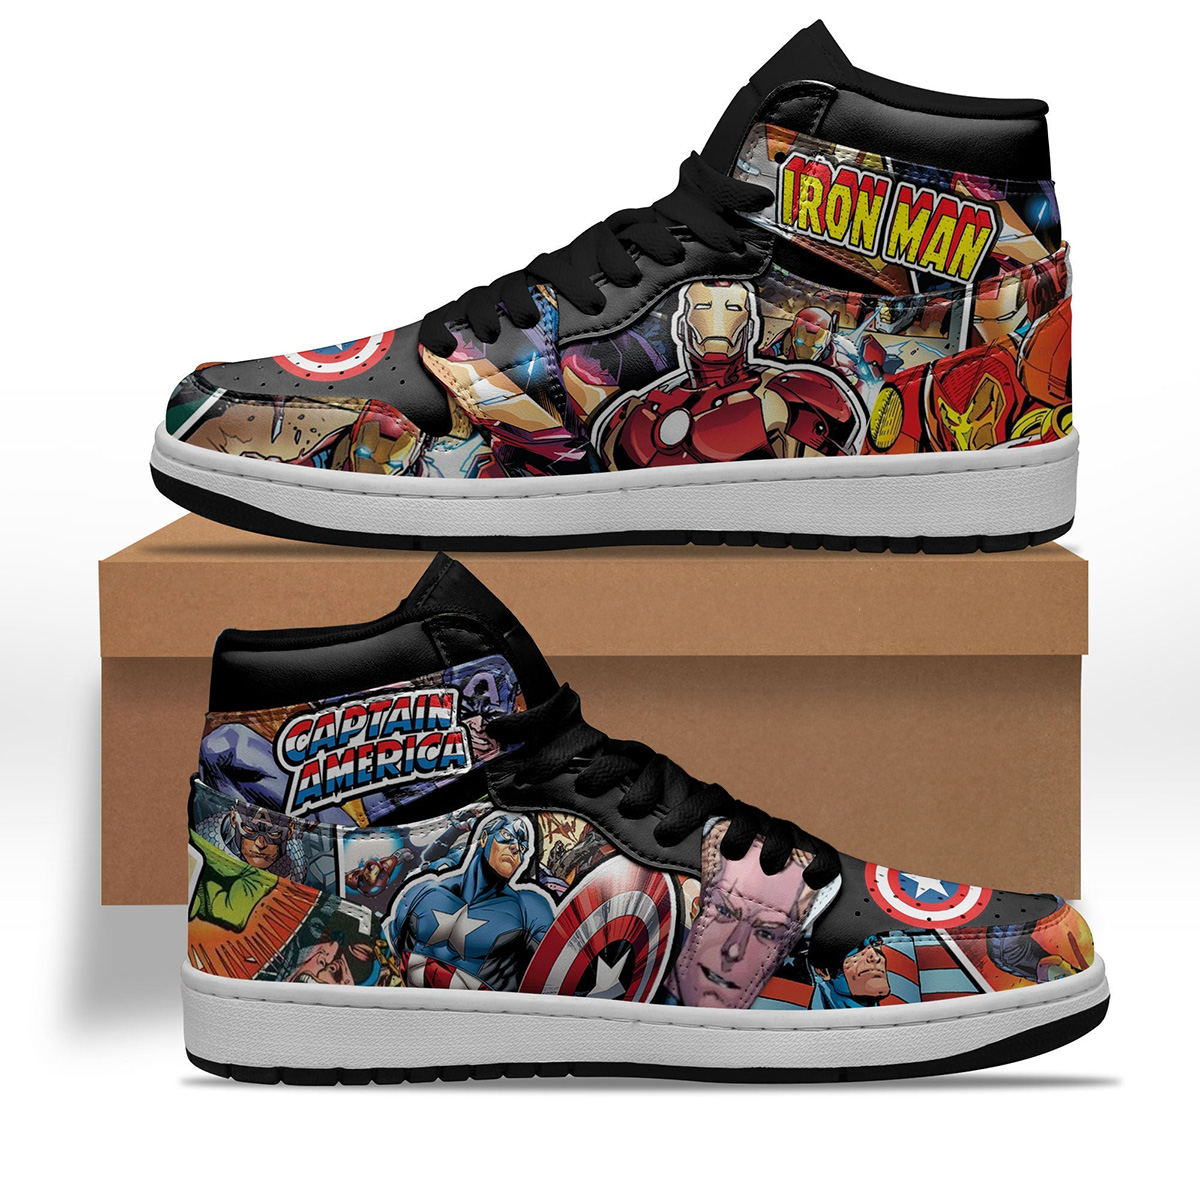 Avenger Ironman x Captain America Shoes Custom